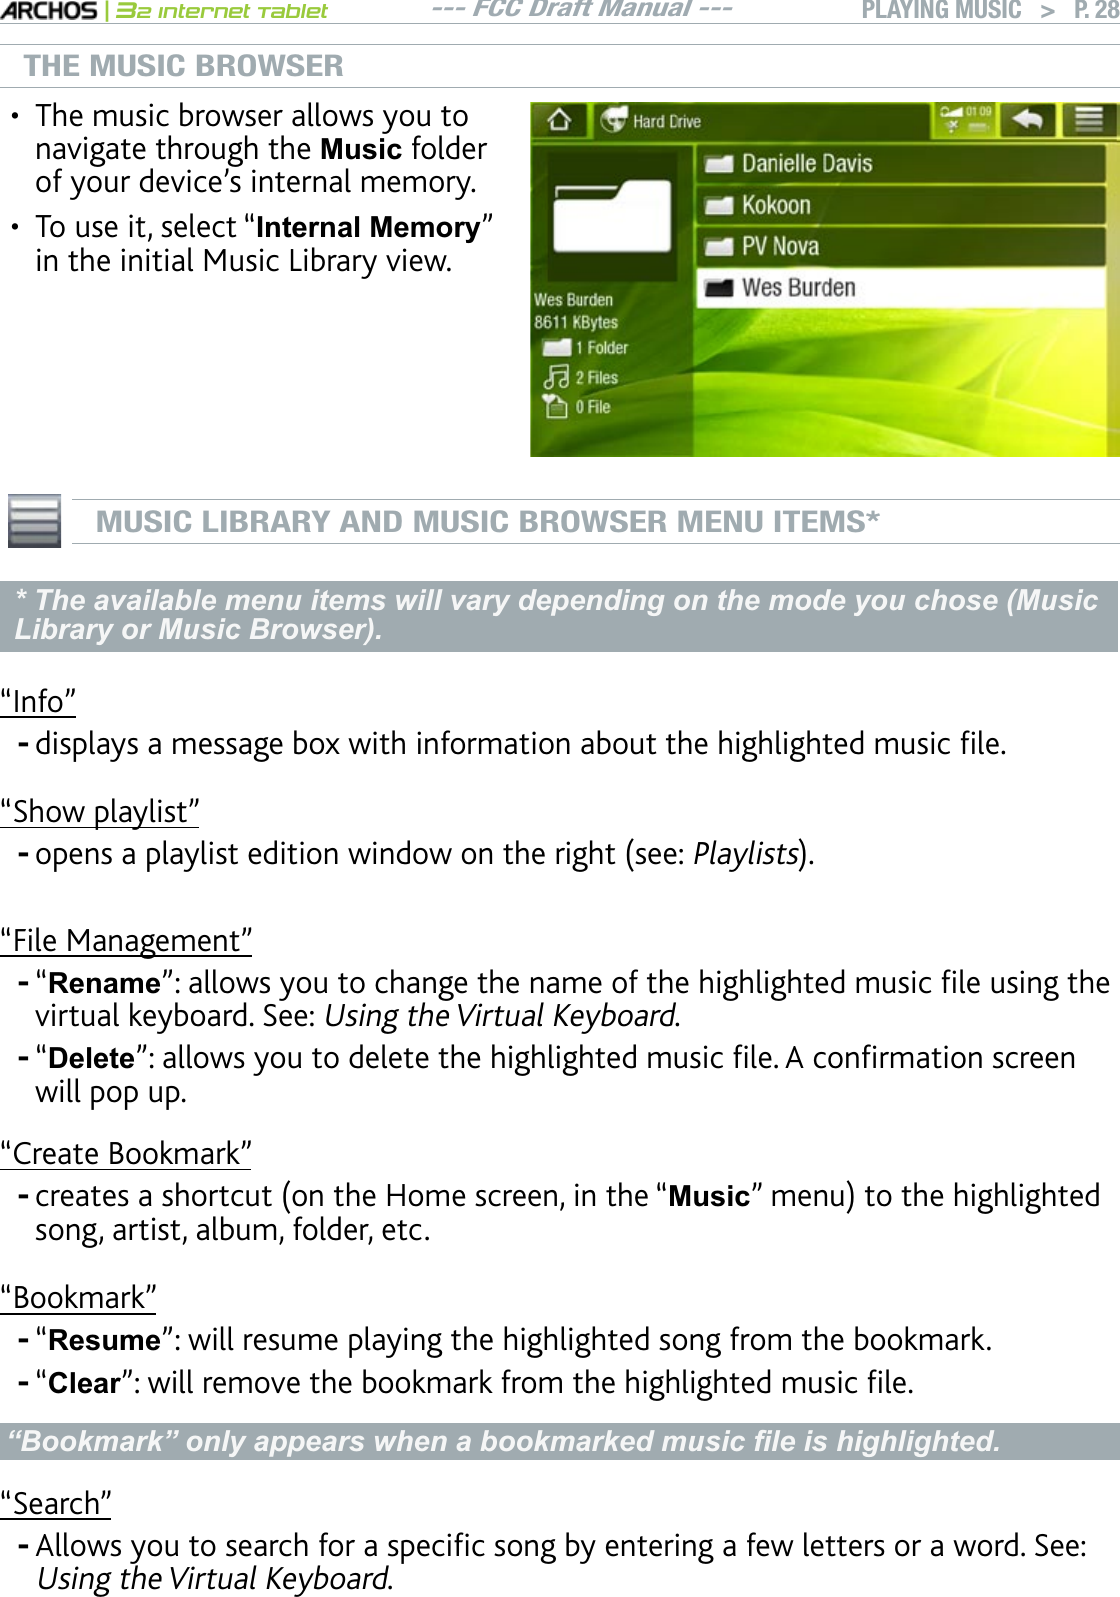 --- FCC Draft Manual ---|32 Internet TabletPLAYING MUSIC   &gt; P. 28THE MUSIC BROWSERThe music browser allows you to navigate through the 0XVLF folder QH[QWTFGXKEGlUKPVGTPCNOGOQT[To use it, select “Internal Memory” in the initial Music Library view.••MUSIC LIBRARY AND MUSIC BROWSER MENU ITEMS** The available menu items will vary depending on the mode you chose (Music Library or Music Browser).m+PHQnFKURNC[UCOGUUCIGDQZYKVJKPHQTOCVKQPCDQWVVJGJKIJNKIJVGFOWUKEÒNG“Show playlist”QRGPUCRNC[NKUVGFKVKQPYKPFQYQPVJGTKIJVUGGPlaylists“File Management”“RenamenCNNQYU[QWVQEJCPIGVJGPCOGQHVJGJKIJNKIJVGFOWUKEÒNGWUKPIVJGvirtual keyboard. See: Using the Virtual Keyboard.“DeletenCNNQYU[QWVQFGNGVGVJGJKIJNKIJVGFOWUKEÒNG#EQPÒTOCVKQPUETGGPwill pop up.“Create Bookmark”ETGCVGUCUJQTVEWVQPVJG*QOGUETGGPKPVJGm0XVLFnOGPWVQVJGJKIJNKIJVGFsong, artist, album, folder, etc.“Bookmark”“Resume”: will resume playing the highlighted song from the bookmark.“ClearnYKNNTGOQXGVJGDQQMOCTMHTQOVJGJKIJNKIJVGFOWUKEÒNG³%RRNPDUN´RQO\DSSHDUVZKHQDERRNPDUNHGPXVLF¿OHLVKLJKOLJKWHG“Search”#NNQYU[QWVQUGCTEJHQTCURGEKÒEUQPID[GPVGTKPICHGYNGVVGTUQTCYQTF5GGUsing the Virtual Keyboard.--------